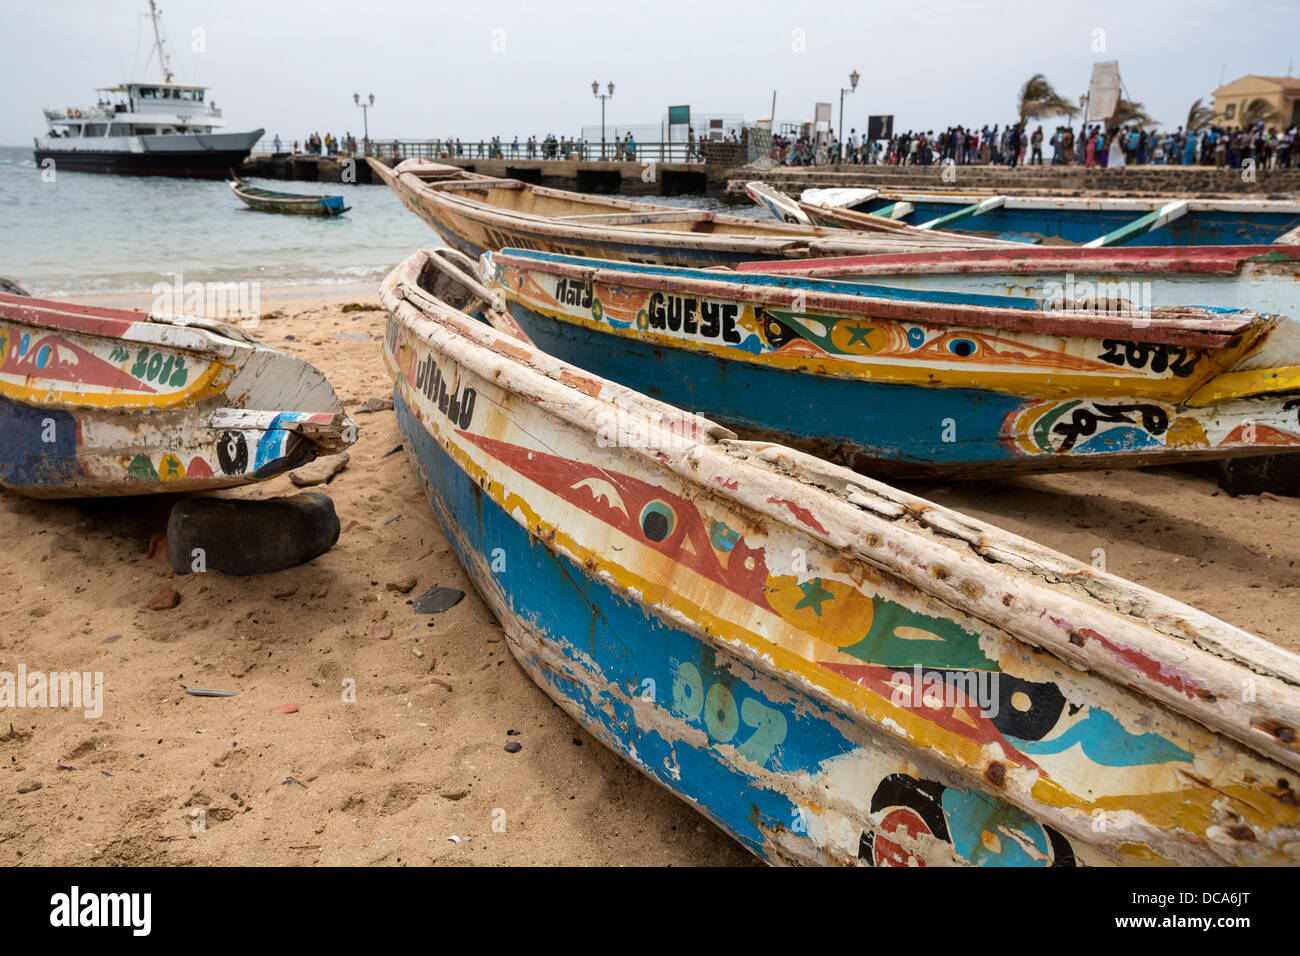 Bateaux de pêche sur la plage, Dakar-Goree ferry dans l'arrière-plan. L'île de Gorée, au Sénégal. Banque D'Images